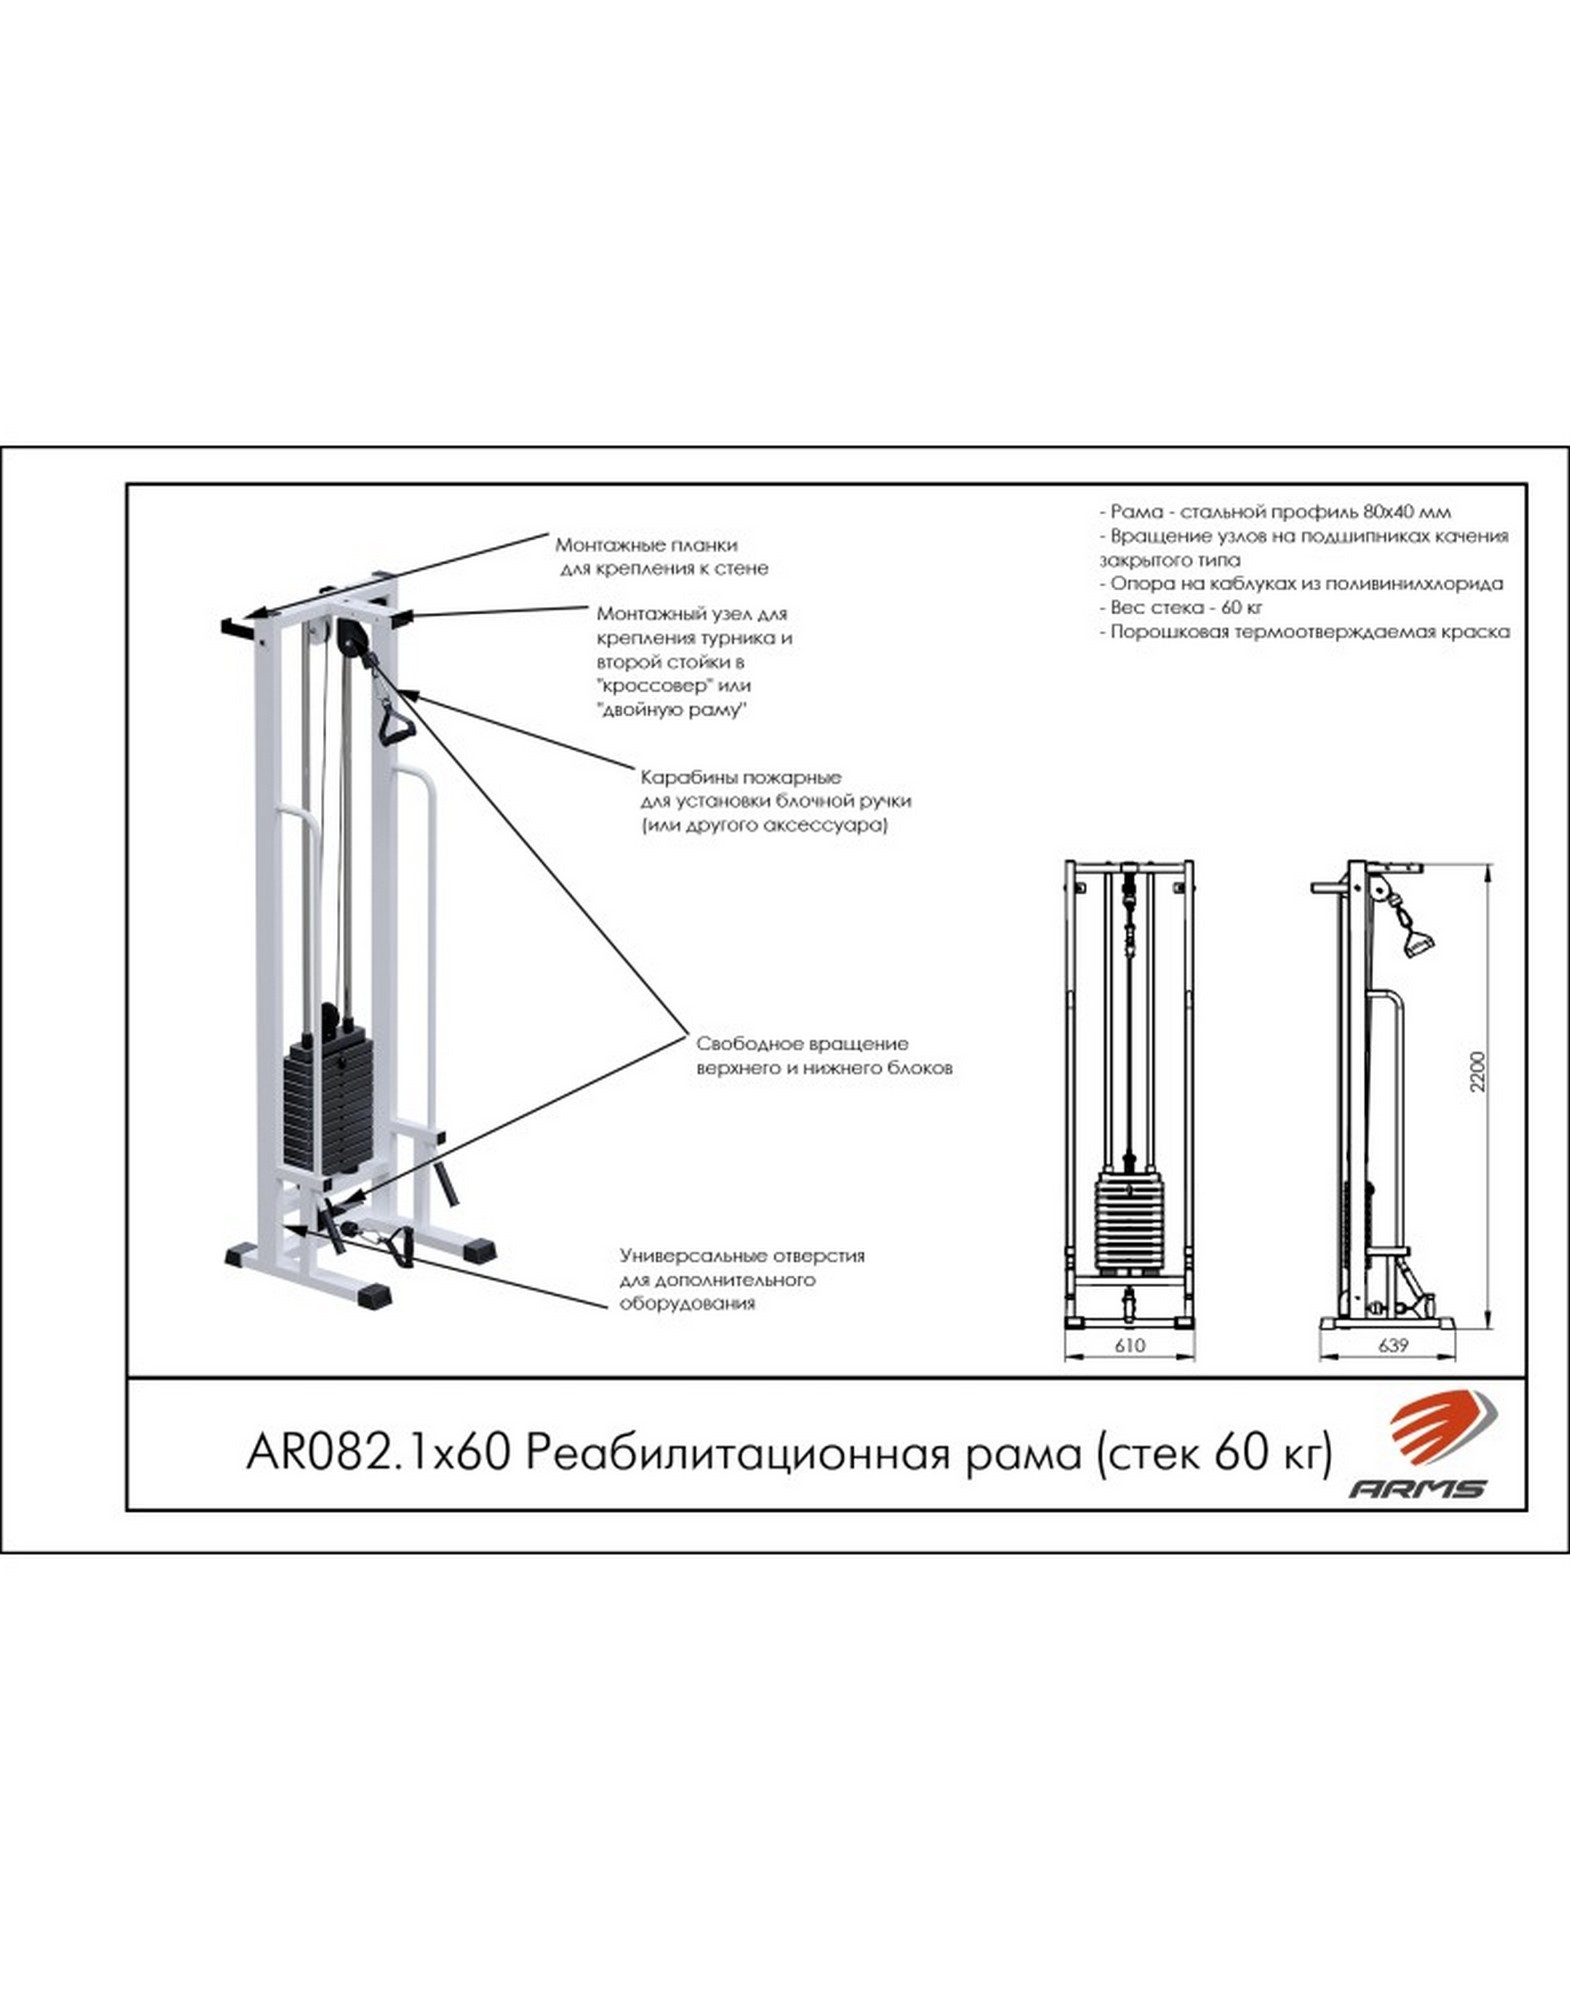 Реабилитационная рама ARMS (стек 60кг) AR082.1х60 1570_2000